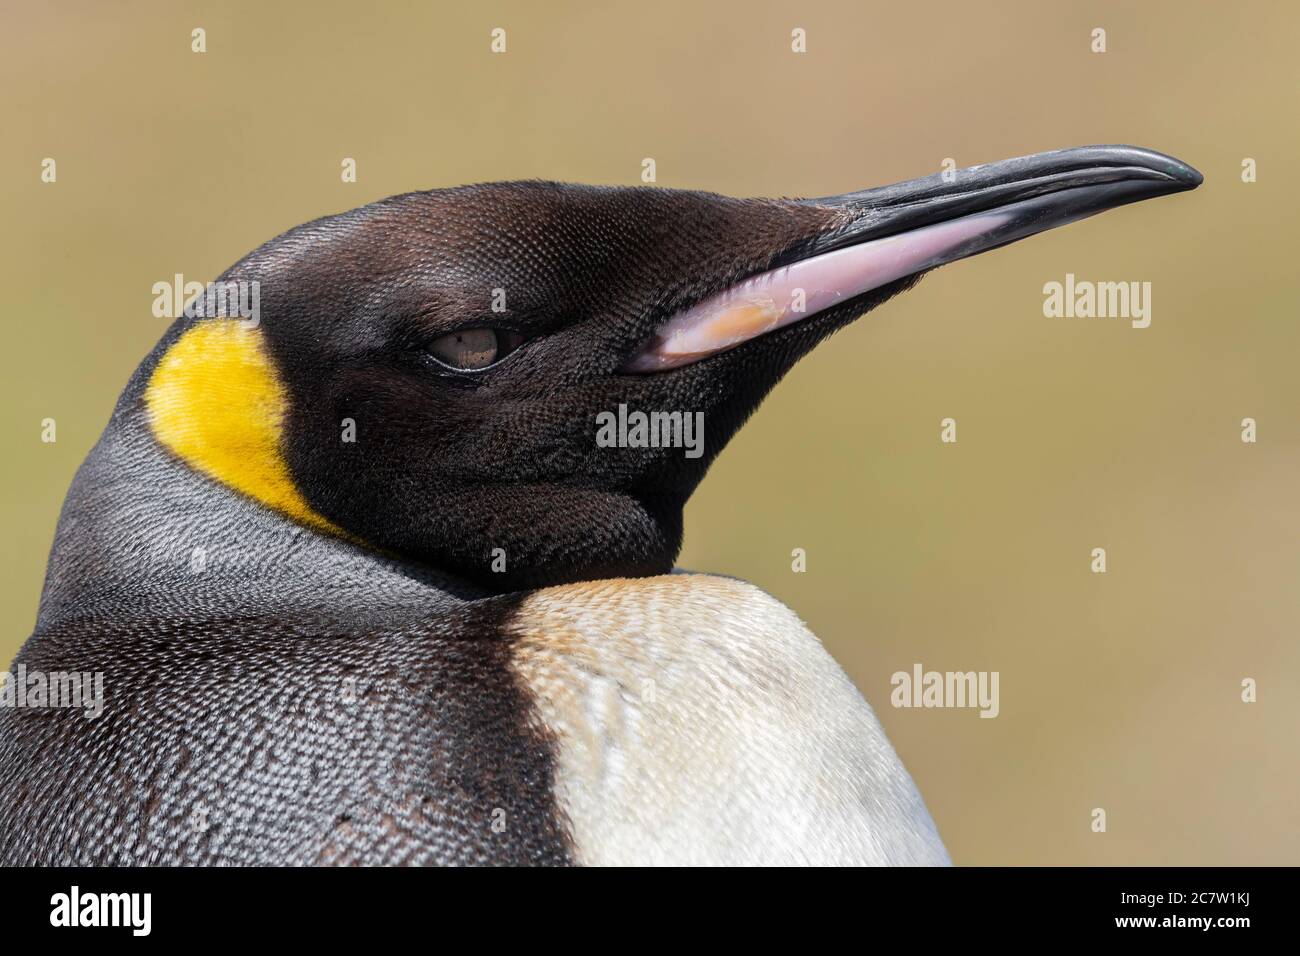 Penguin royal (Aptenodytes patagonicus), gros plan d'un adulte, Cap occidental, Afrique du Sud Banque D'Images